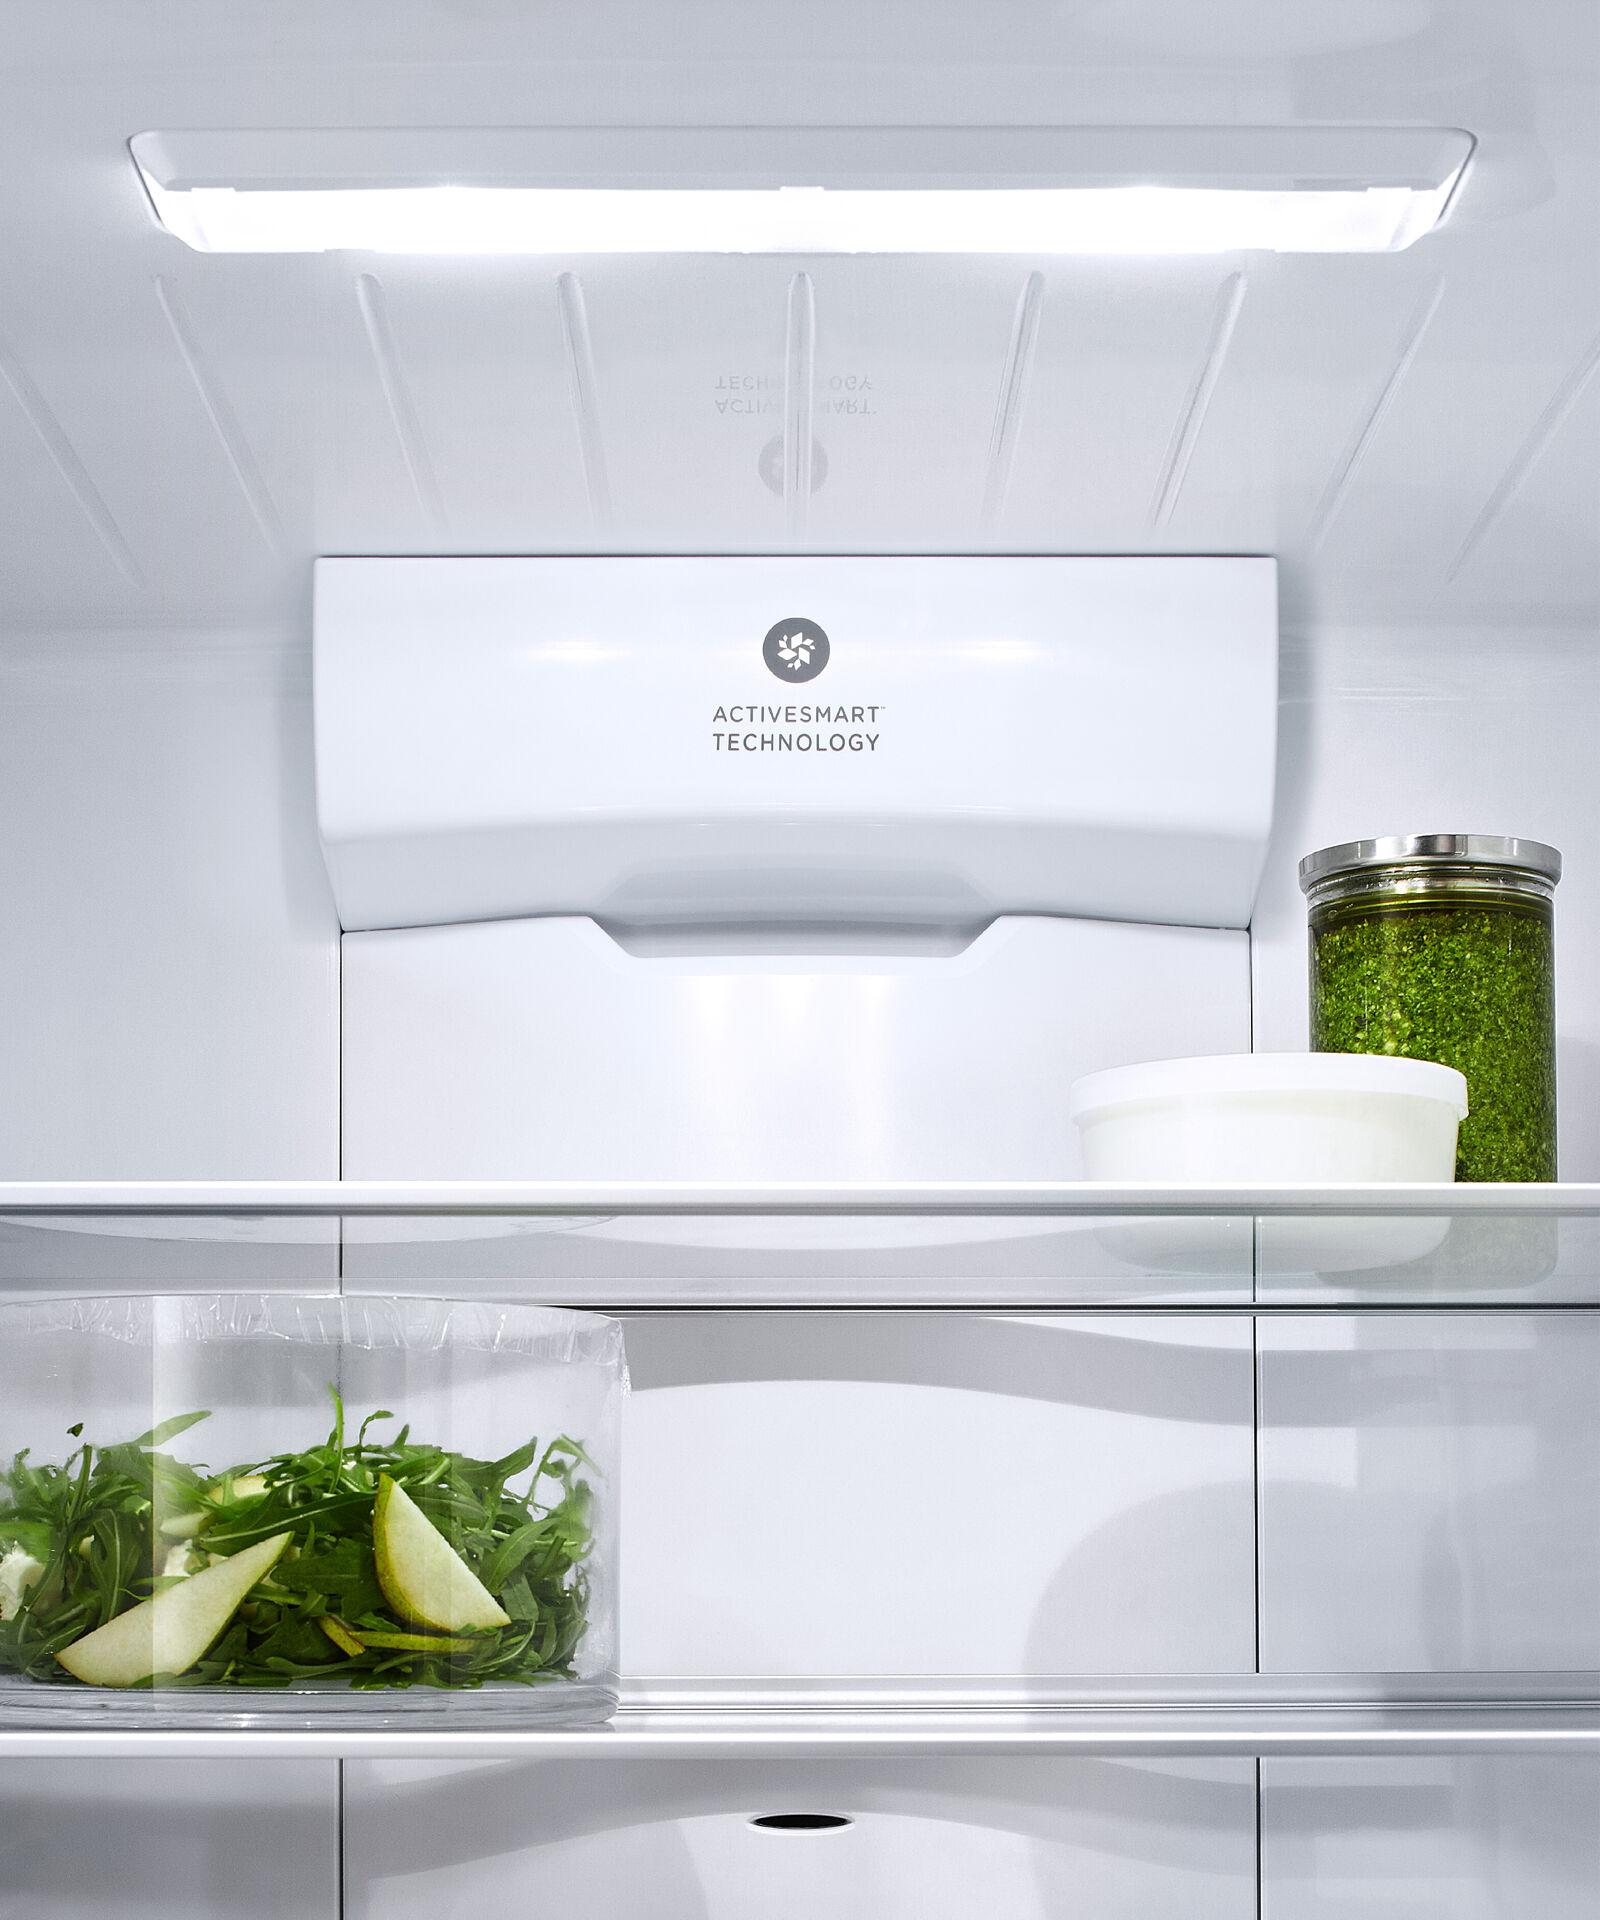 獨立式雪櫃冷凍櫃, 79cm, 自動製冰和冰水, gallery image 3.0